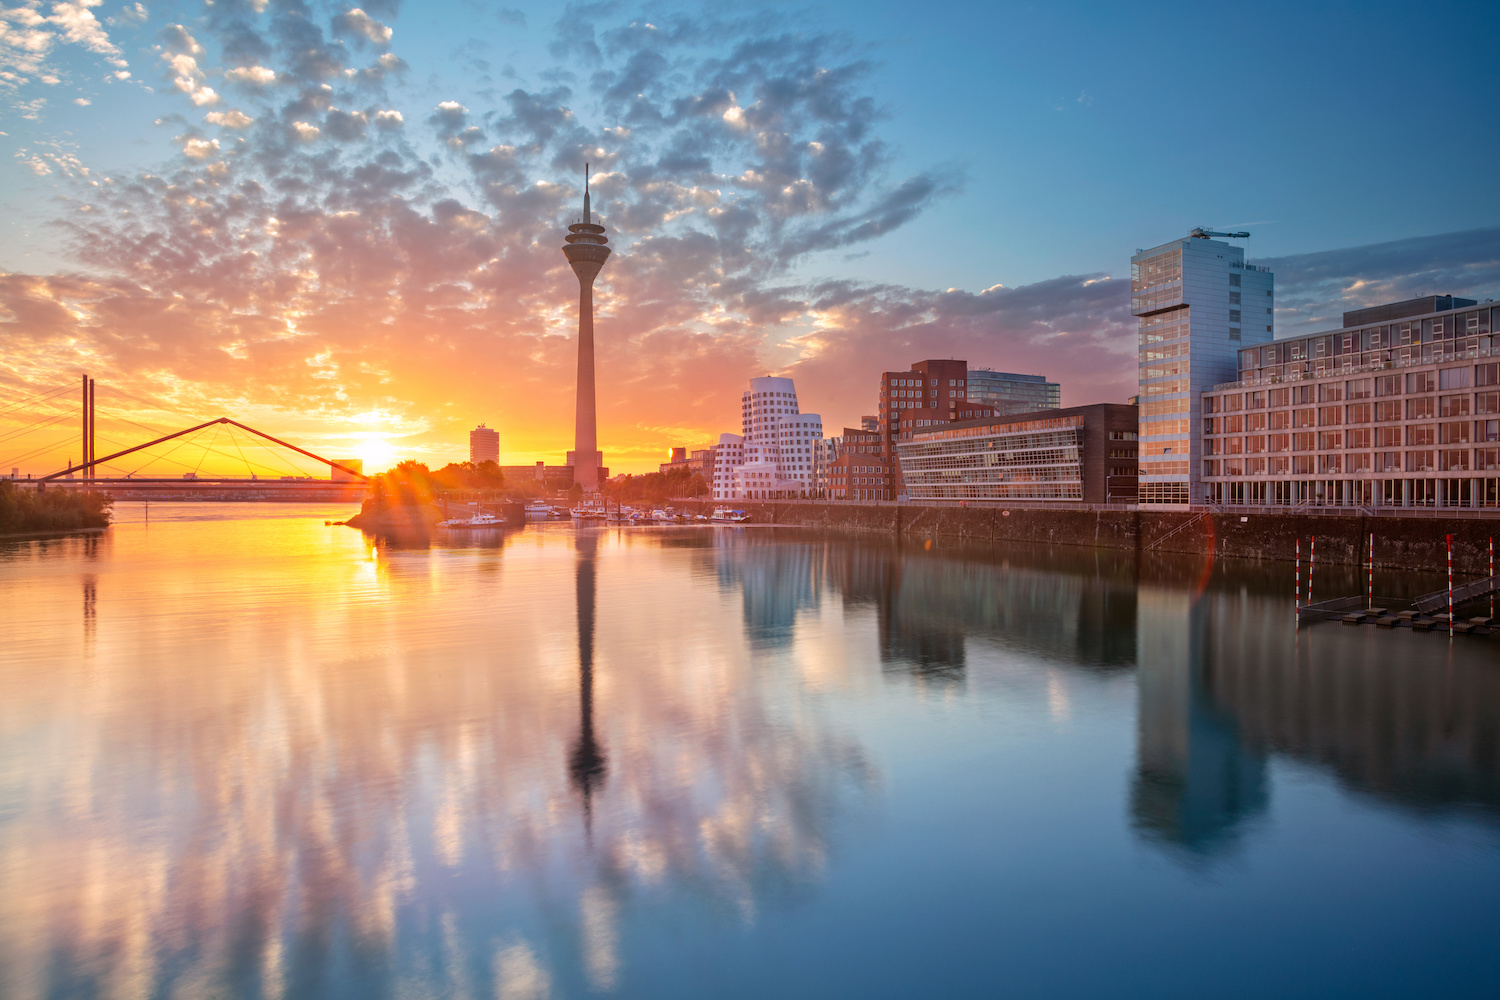 Fluss Rhein in Düsseldorf umgeben von Häusern und Sonnenuntergang